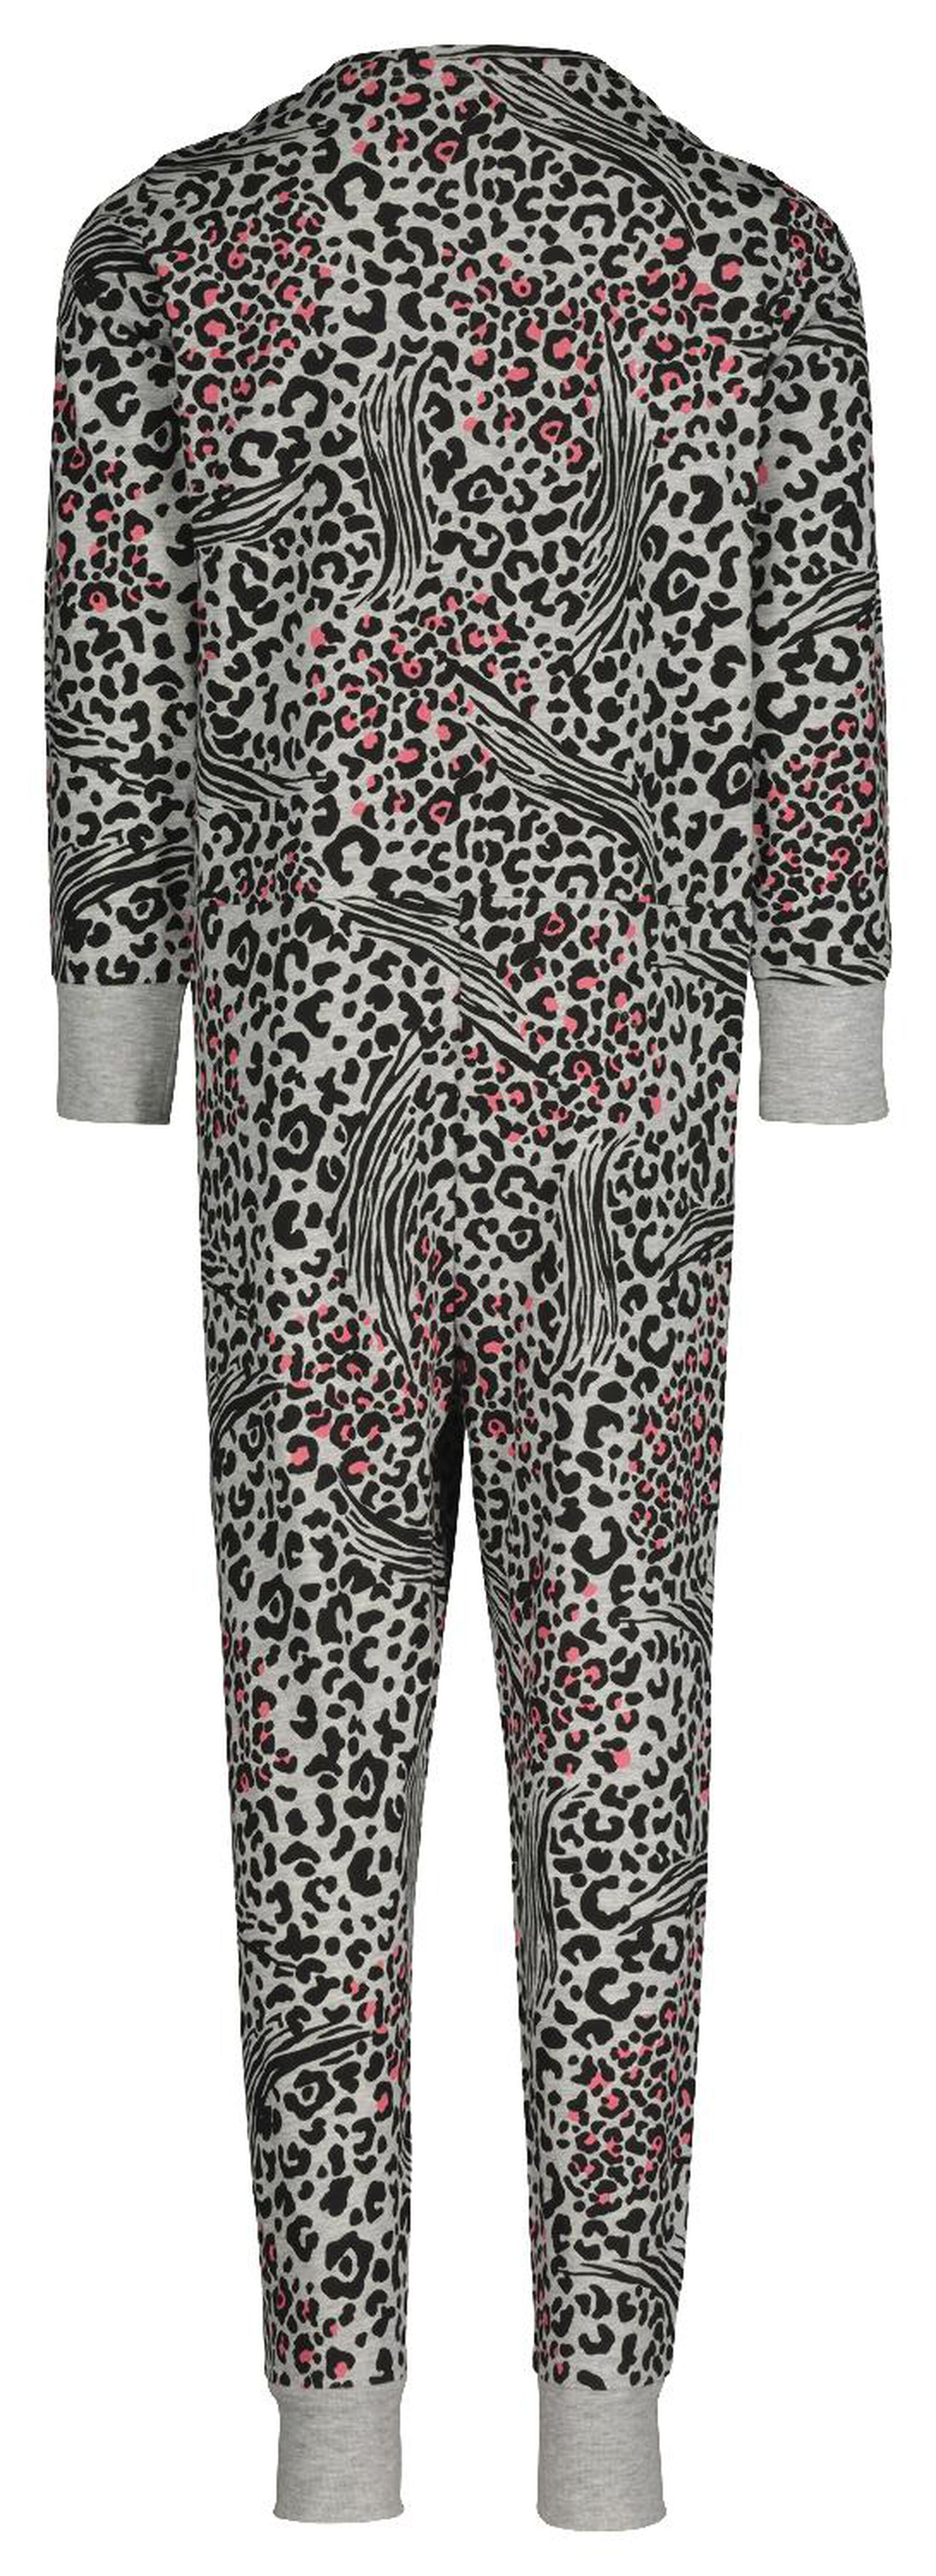 combinaison pyjama enfant imprimé animaux gris chiné - HEMA